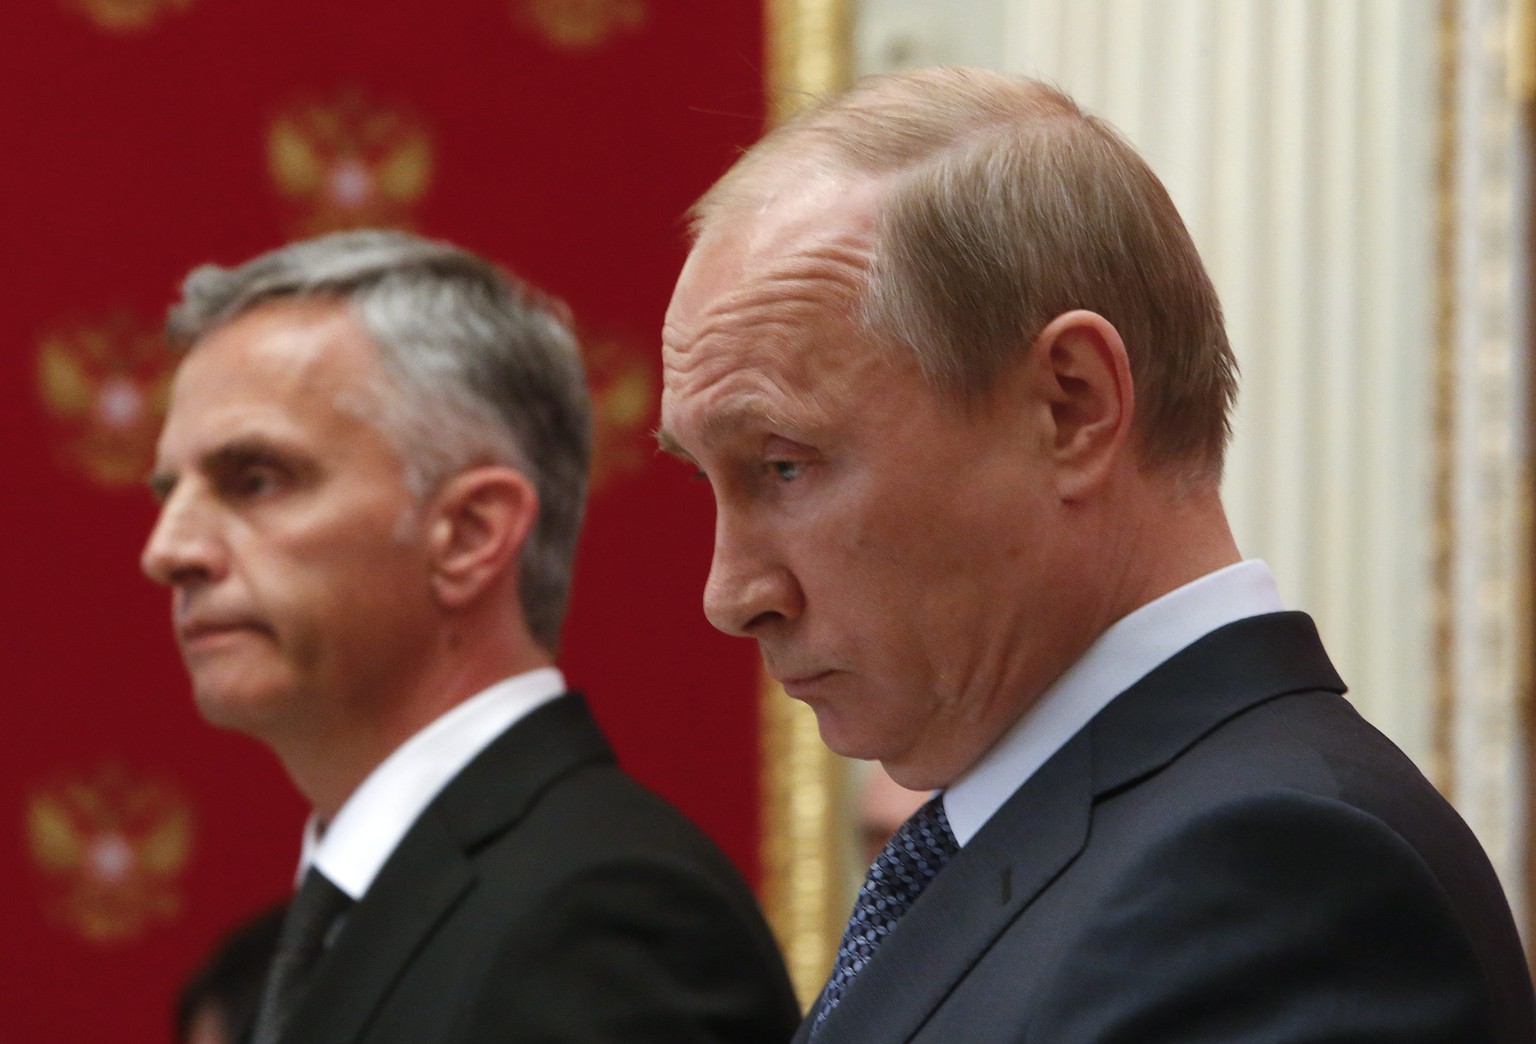 Putin mit Burkhalter. Was geht im Kopf des Kreml-Chef vor?